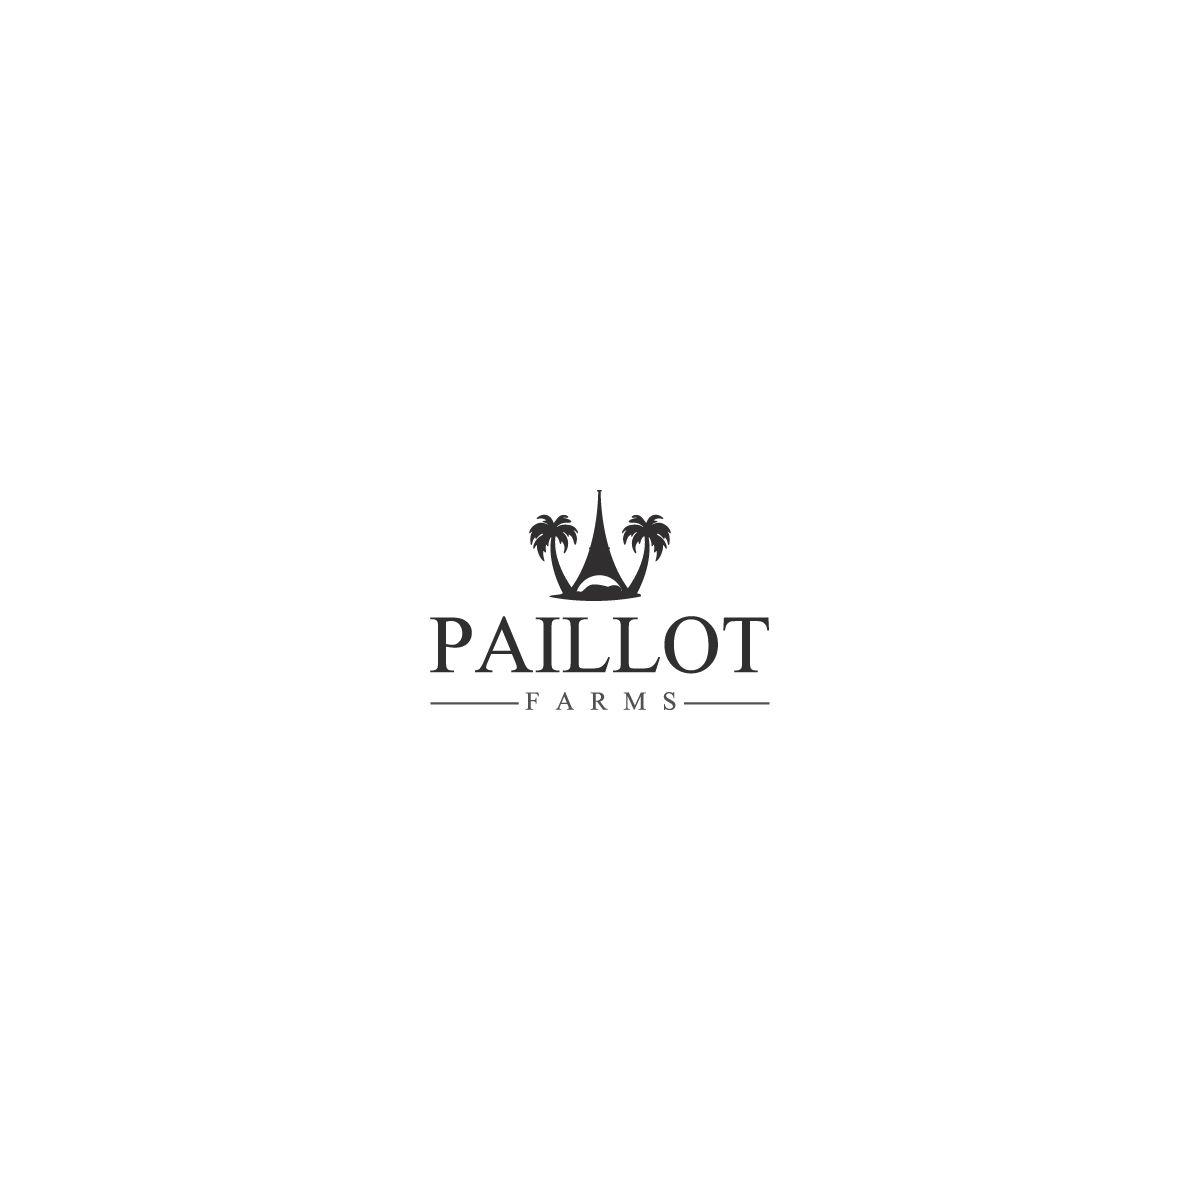 Primitive 21 Logo - Playful, Economical, It Company Logo Design for Paillot Farms